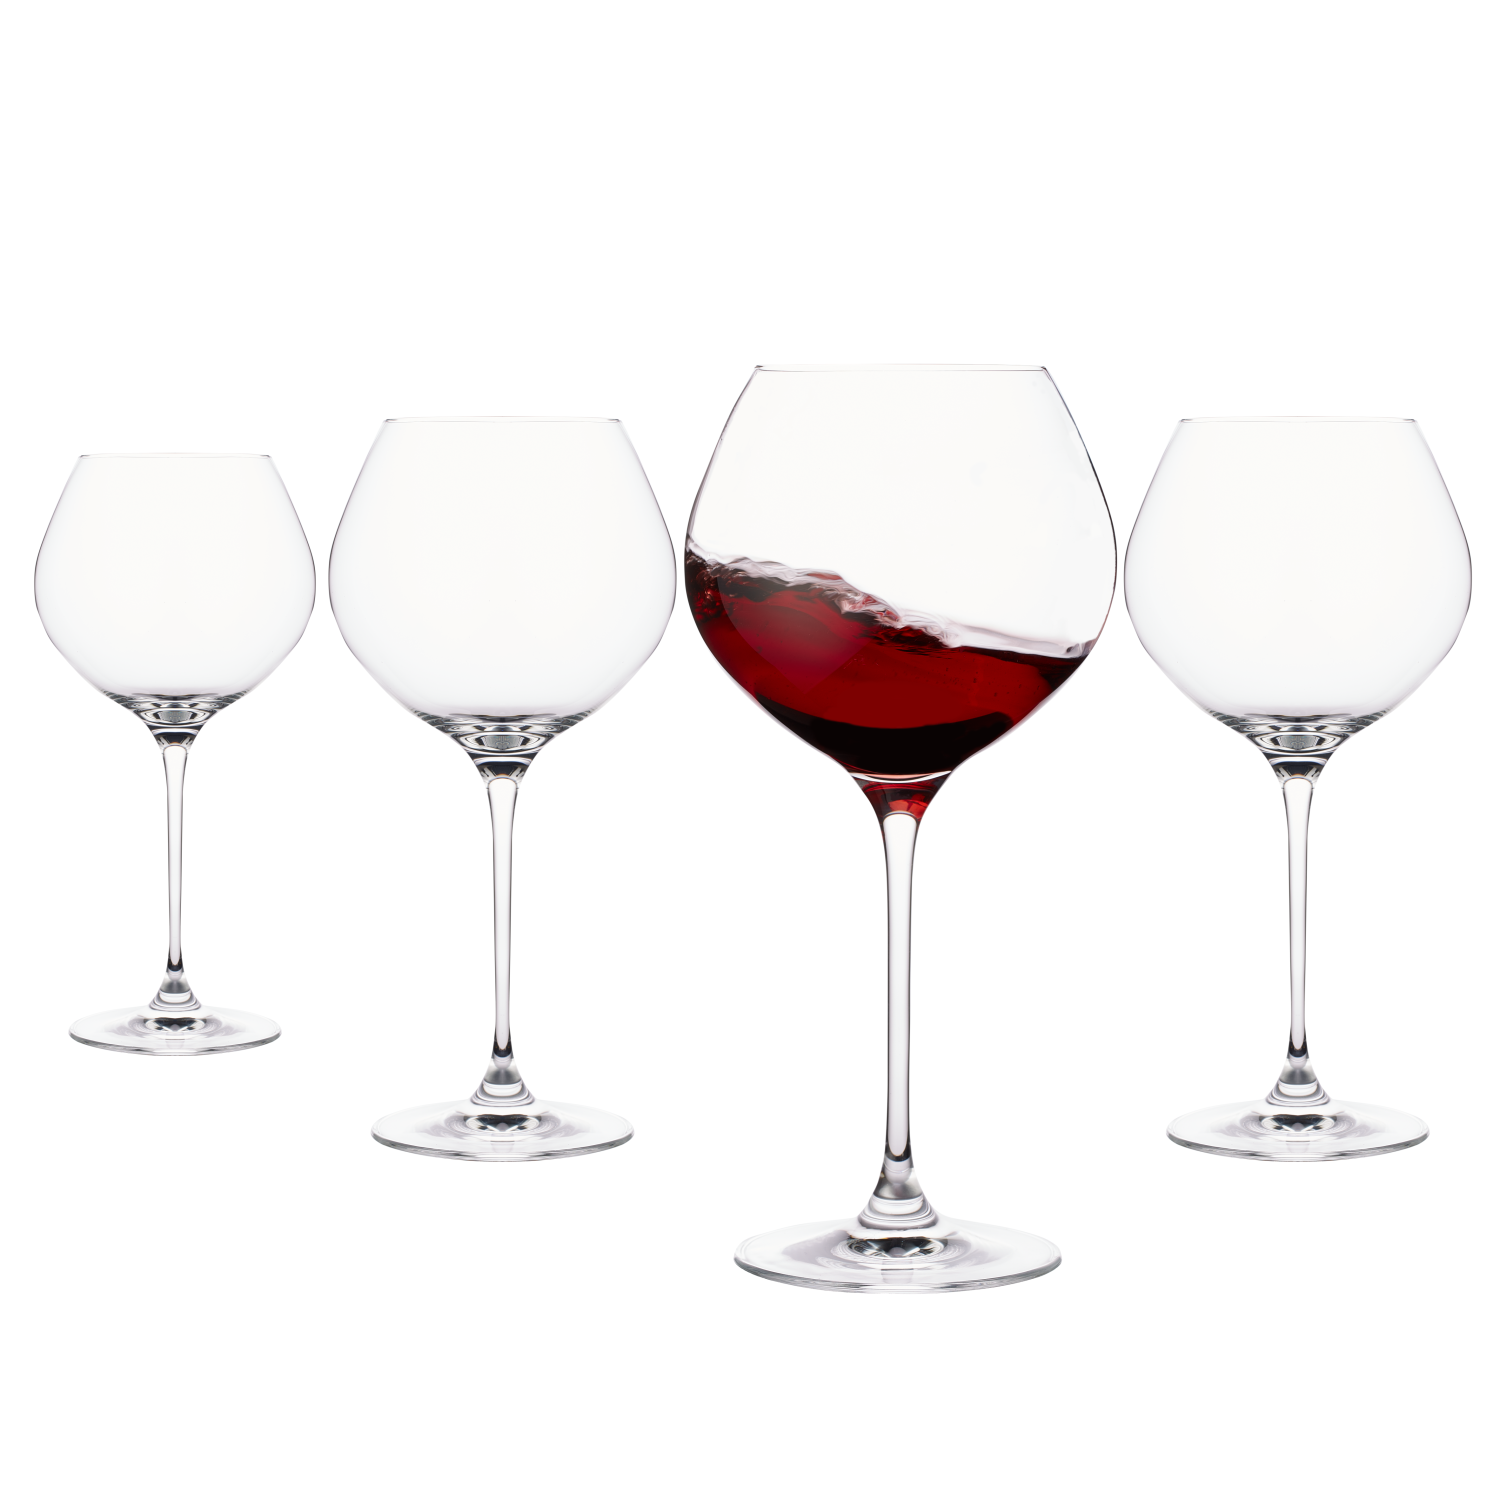 Verre à vin rouge - collection BRASSERIE (x6) - verre en cristal